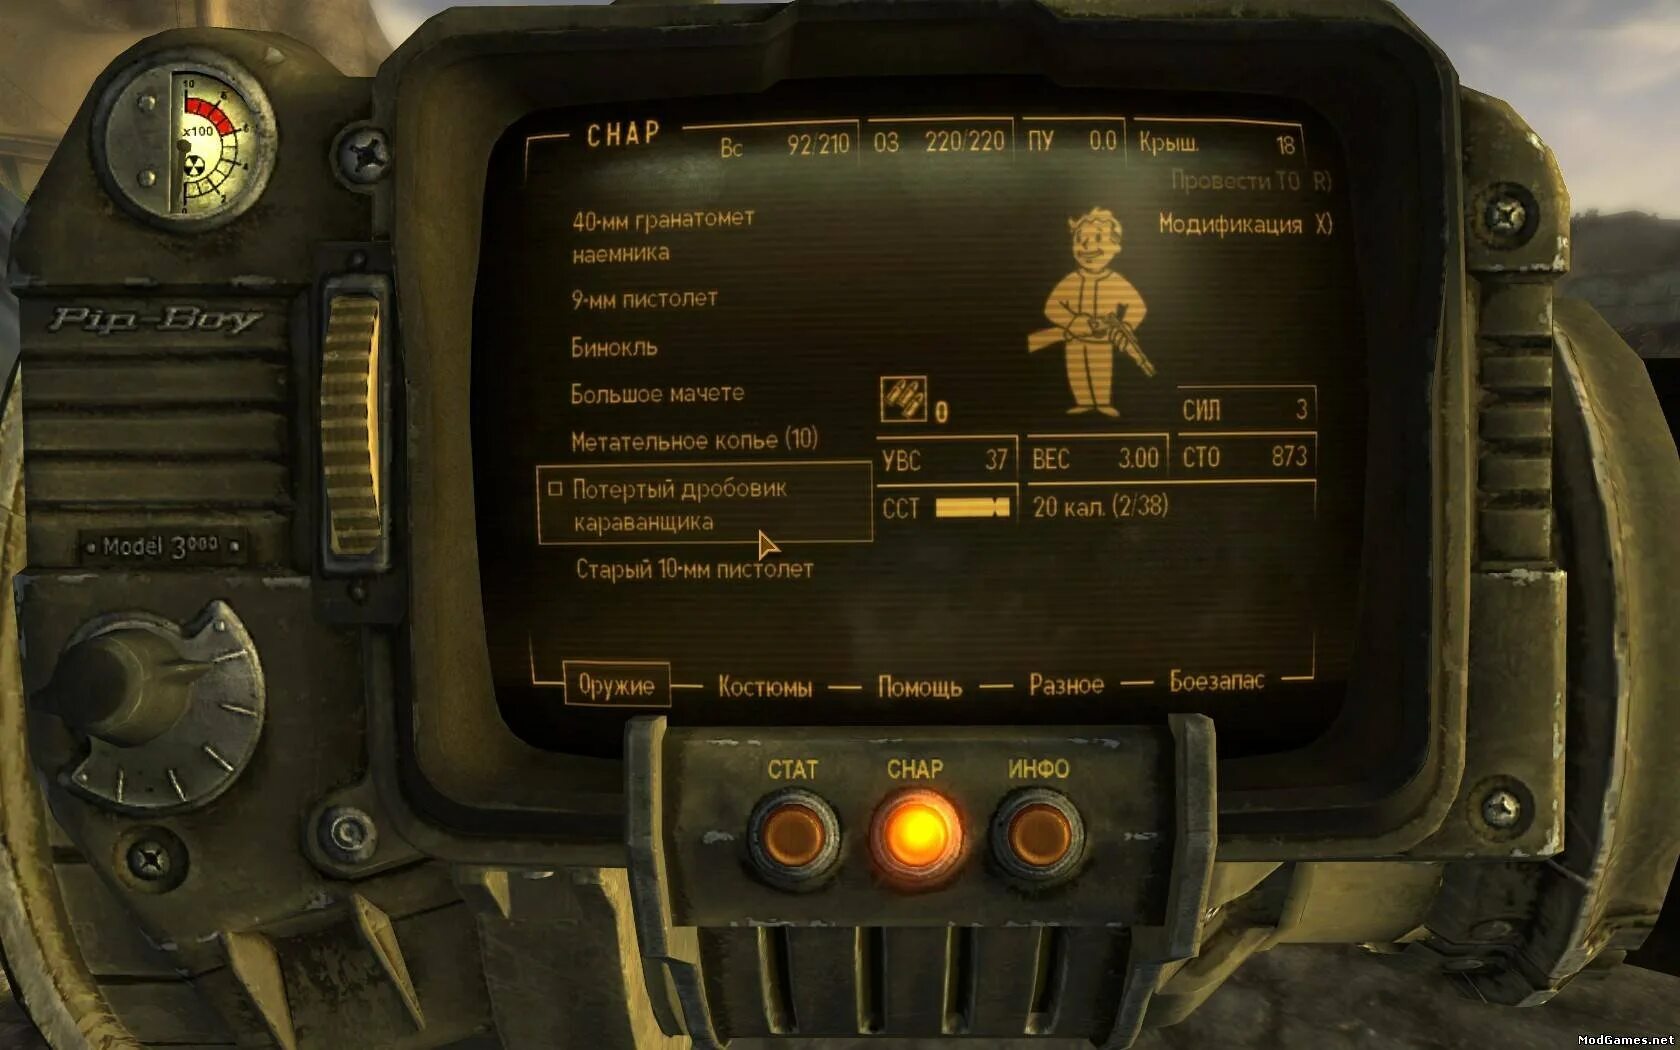 Q-35 модулятор New Vegas. Fallout New Vegas DLC. Fallout 2 1c. Fallout New Vegas гранатомет. Длс русификатор